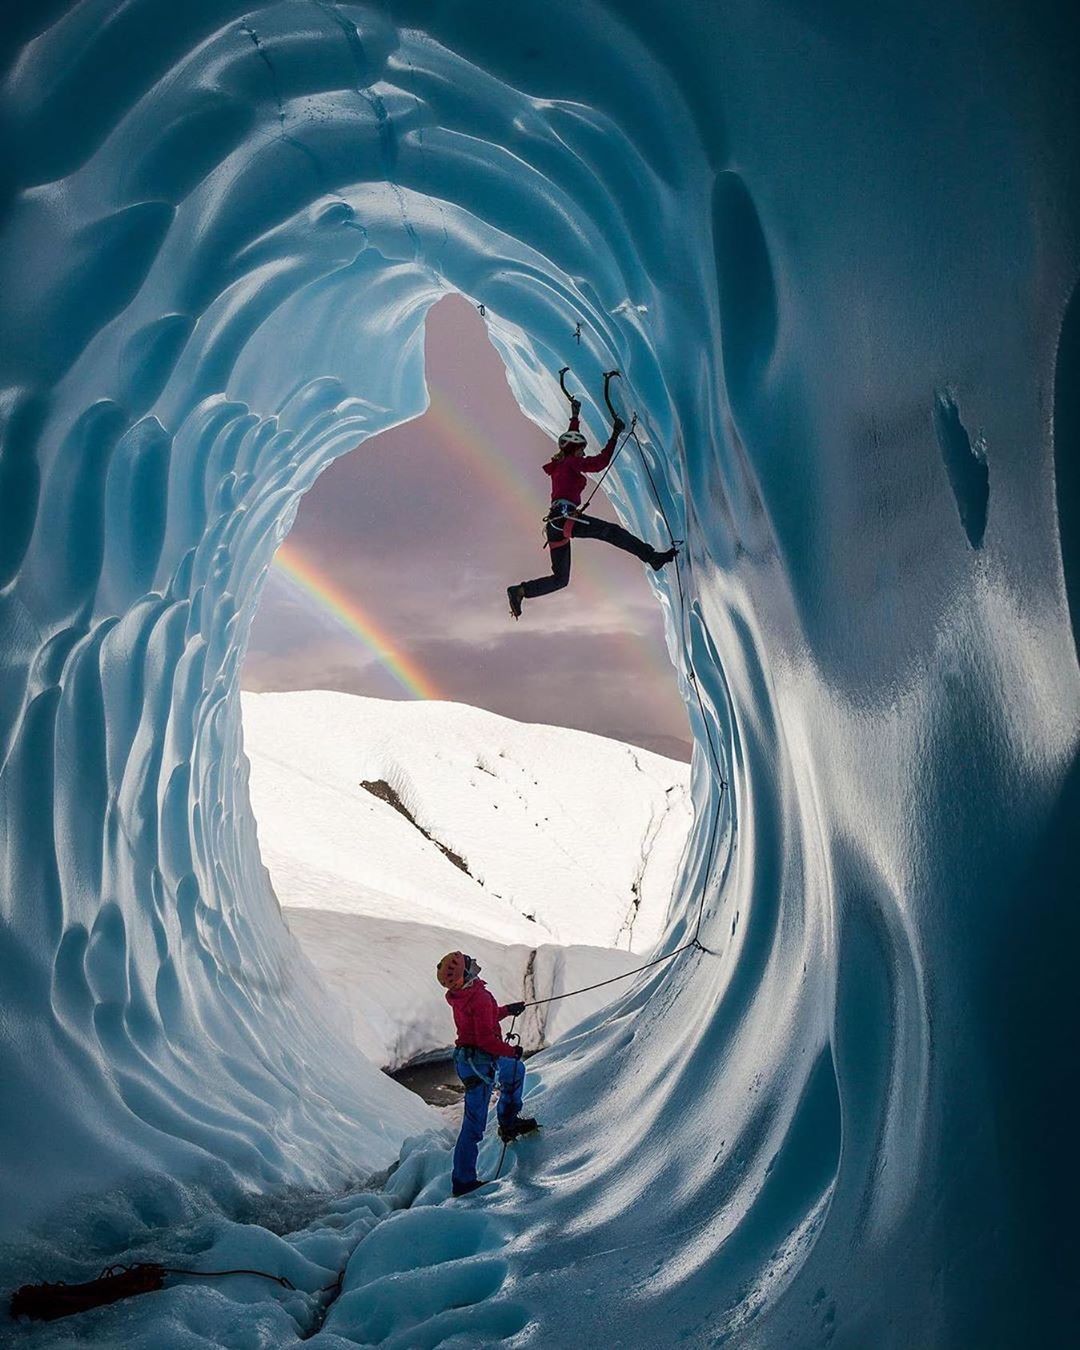 АльпИндустрия • Болеем горами - Двойная радуга в ледяной пещере 🌈

📸 @intothemountain.productions 

#alpindustria #icerock #iceclimbing #iceclimbingimages #alpinism #alpinista #naturelovers #альпиндус...